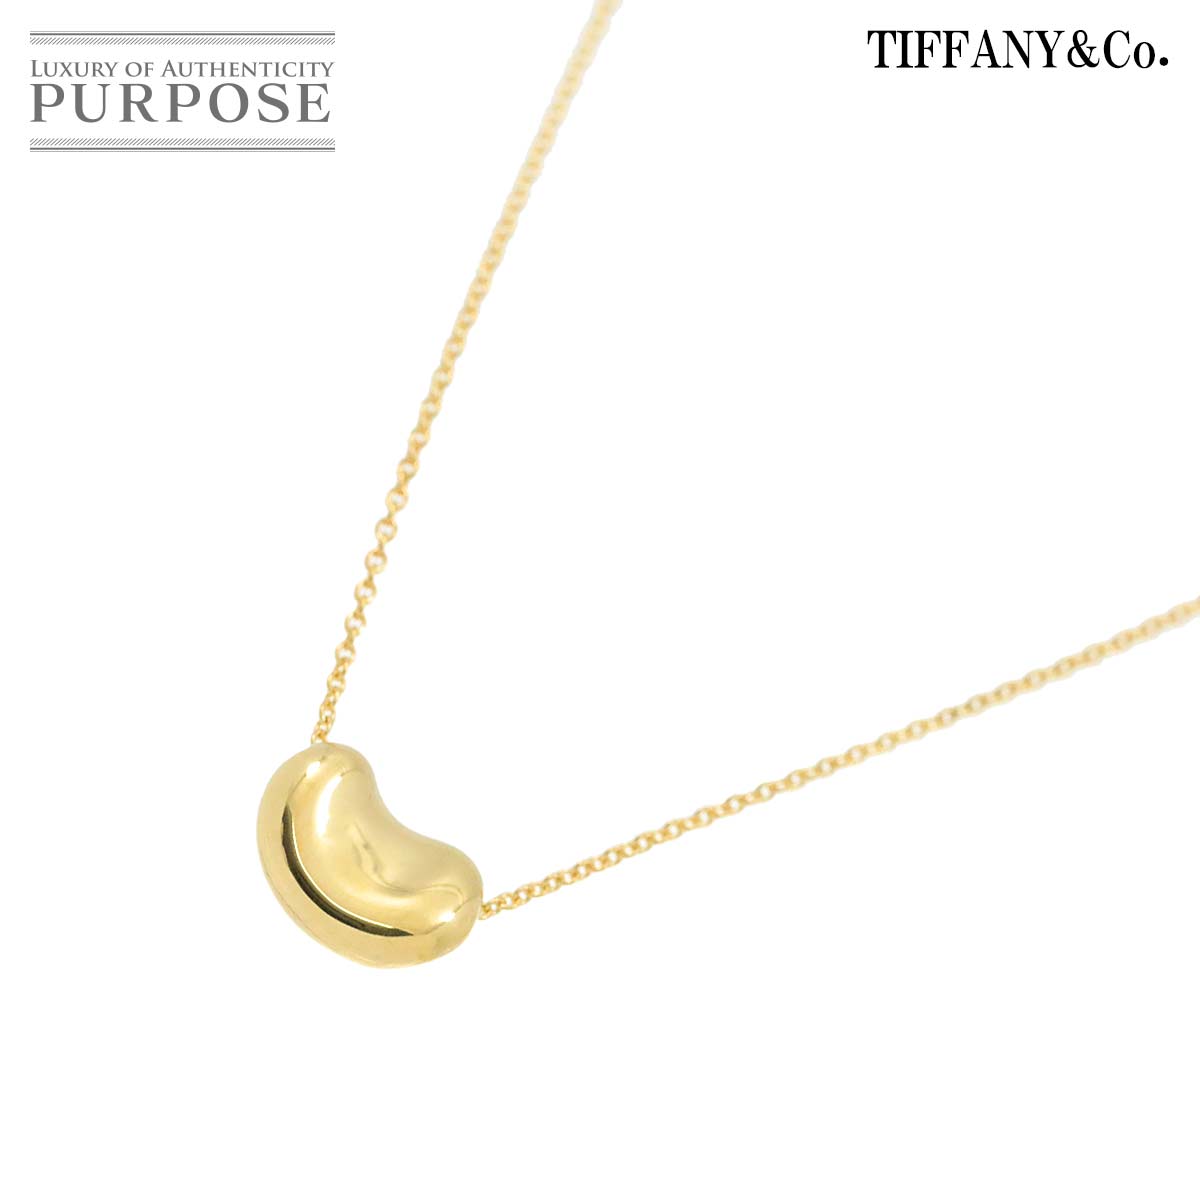 【新品同様】 ティファニー TIFFANY&Co. ビーン ネックレス 40cm K18 YG イエローゴールド 750 Bean Necklace【中古】